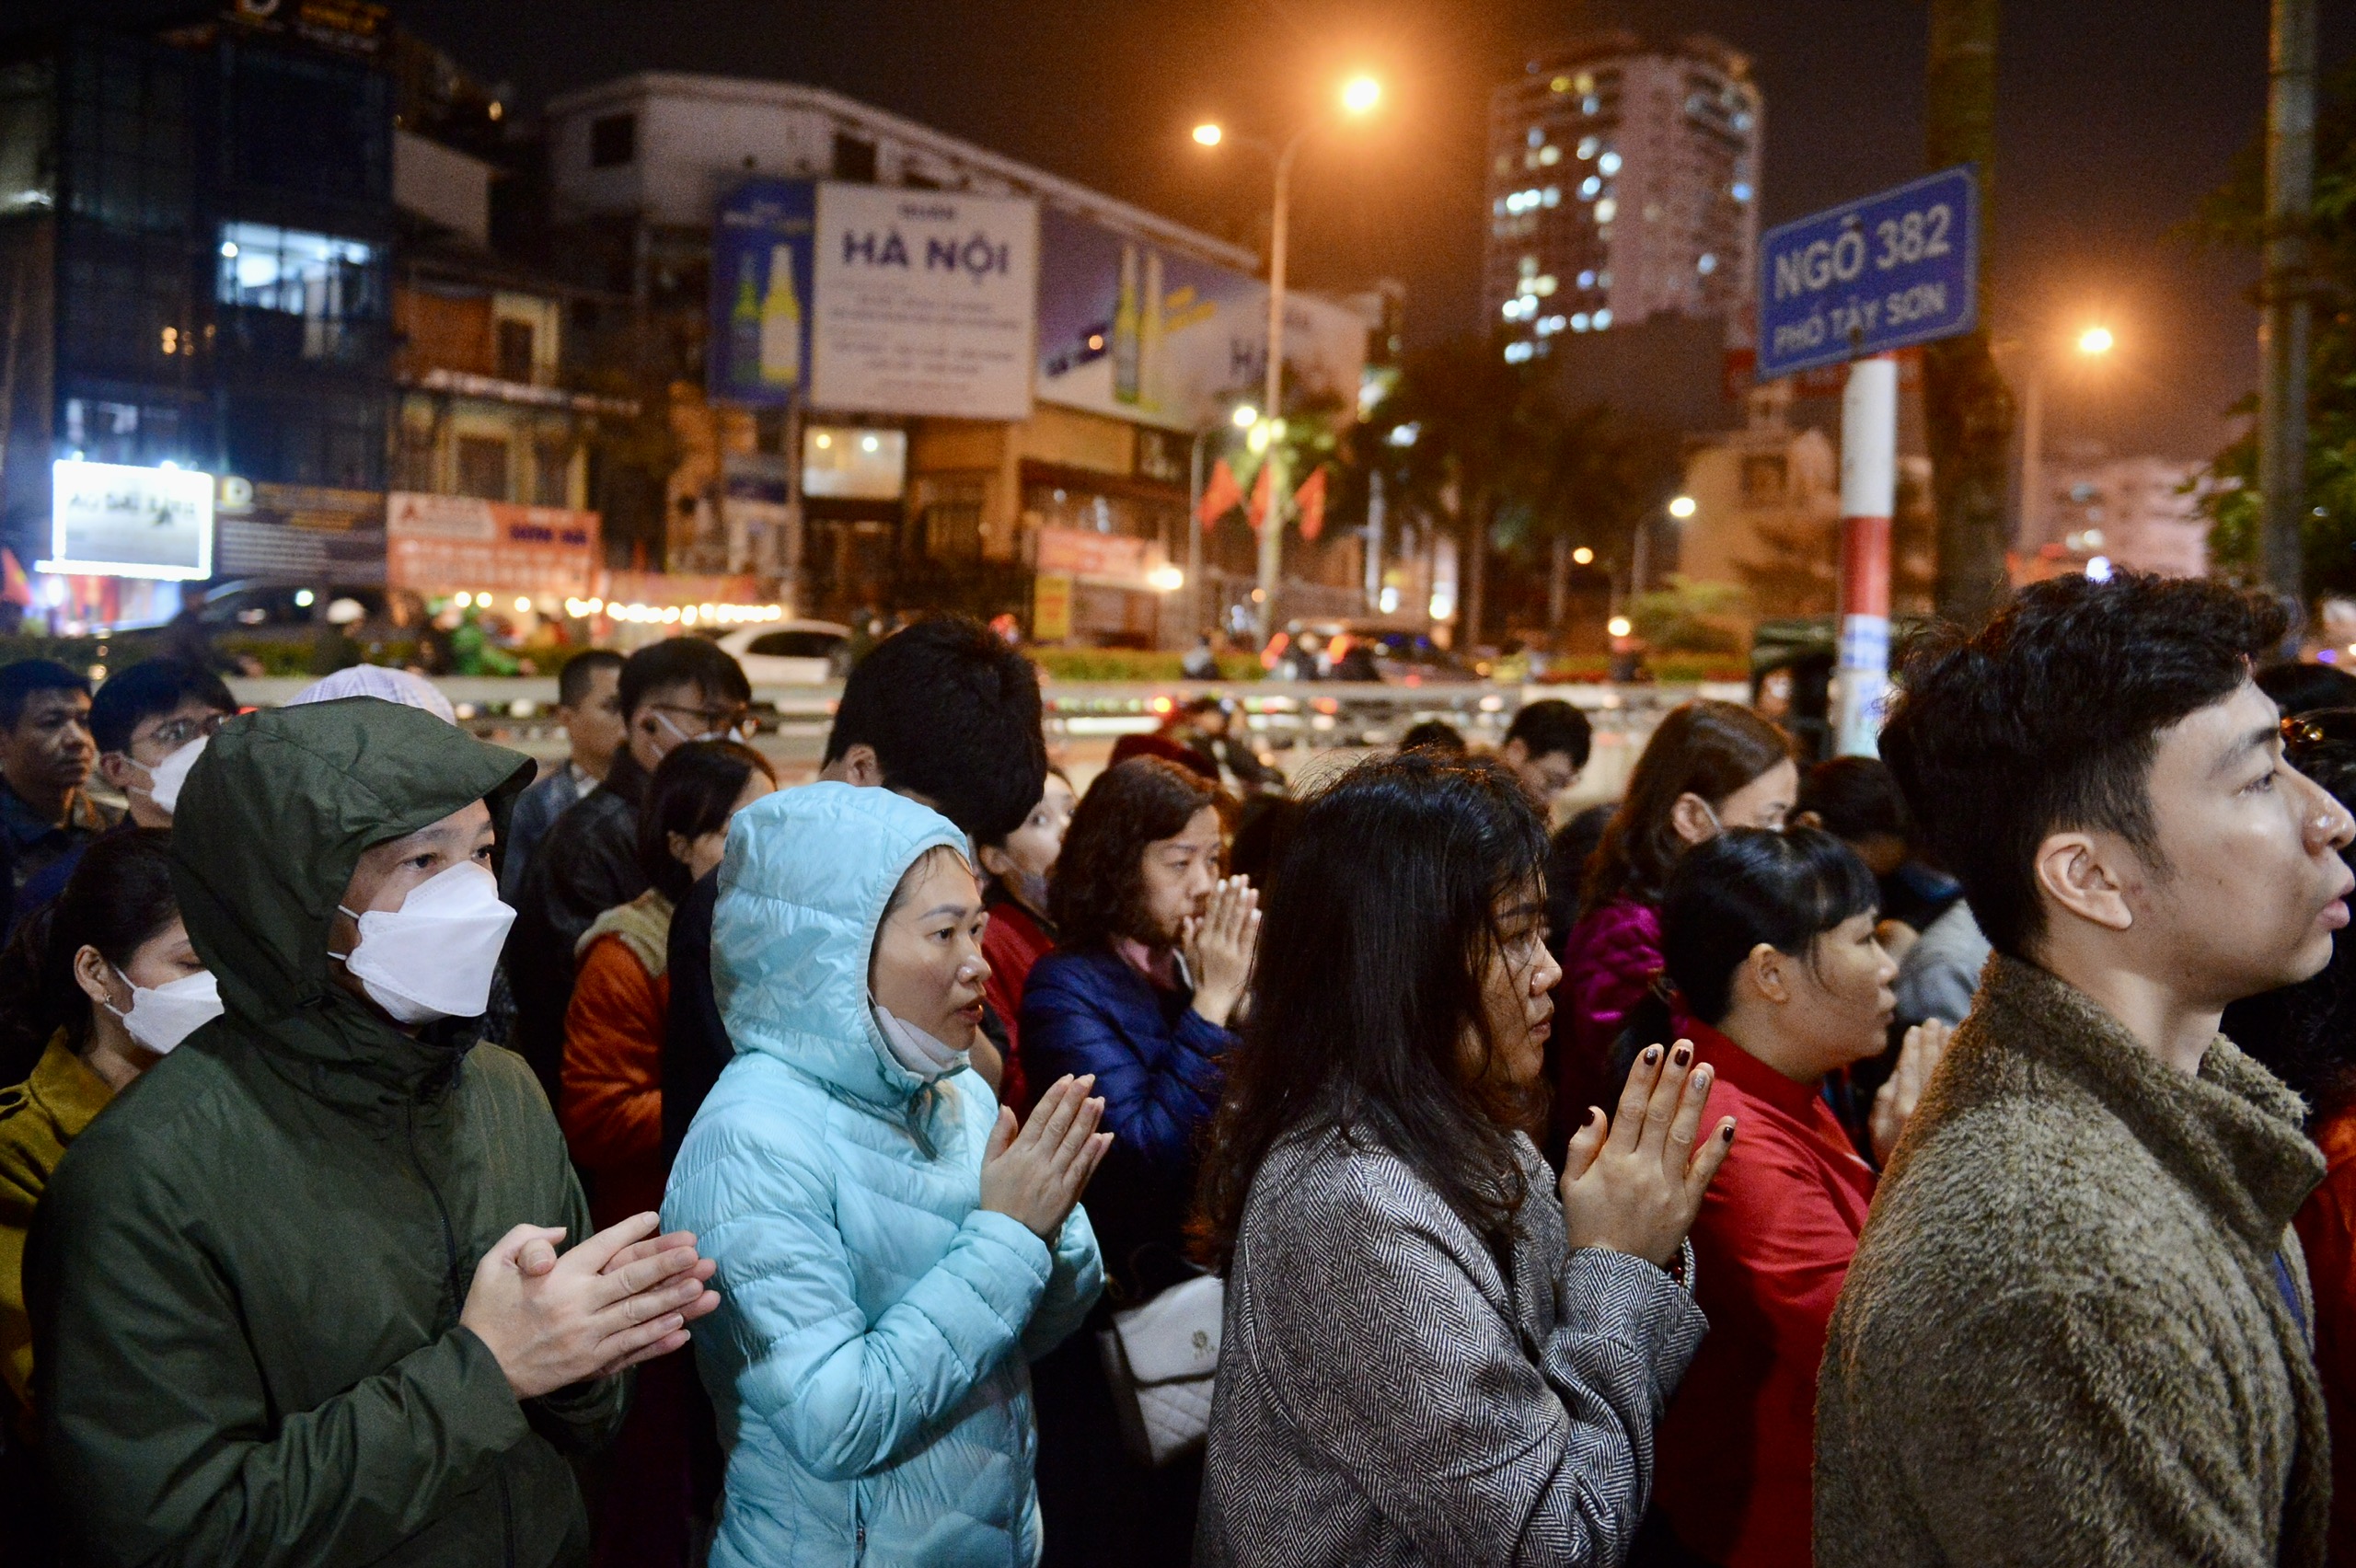 Người dân đứng tràn ra đường vái vọng cầu an, giải sao xấu ở chùa Phúc Khánh- Ảnh 8.